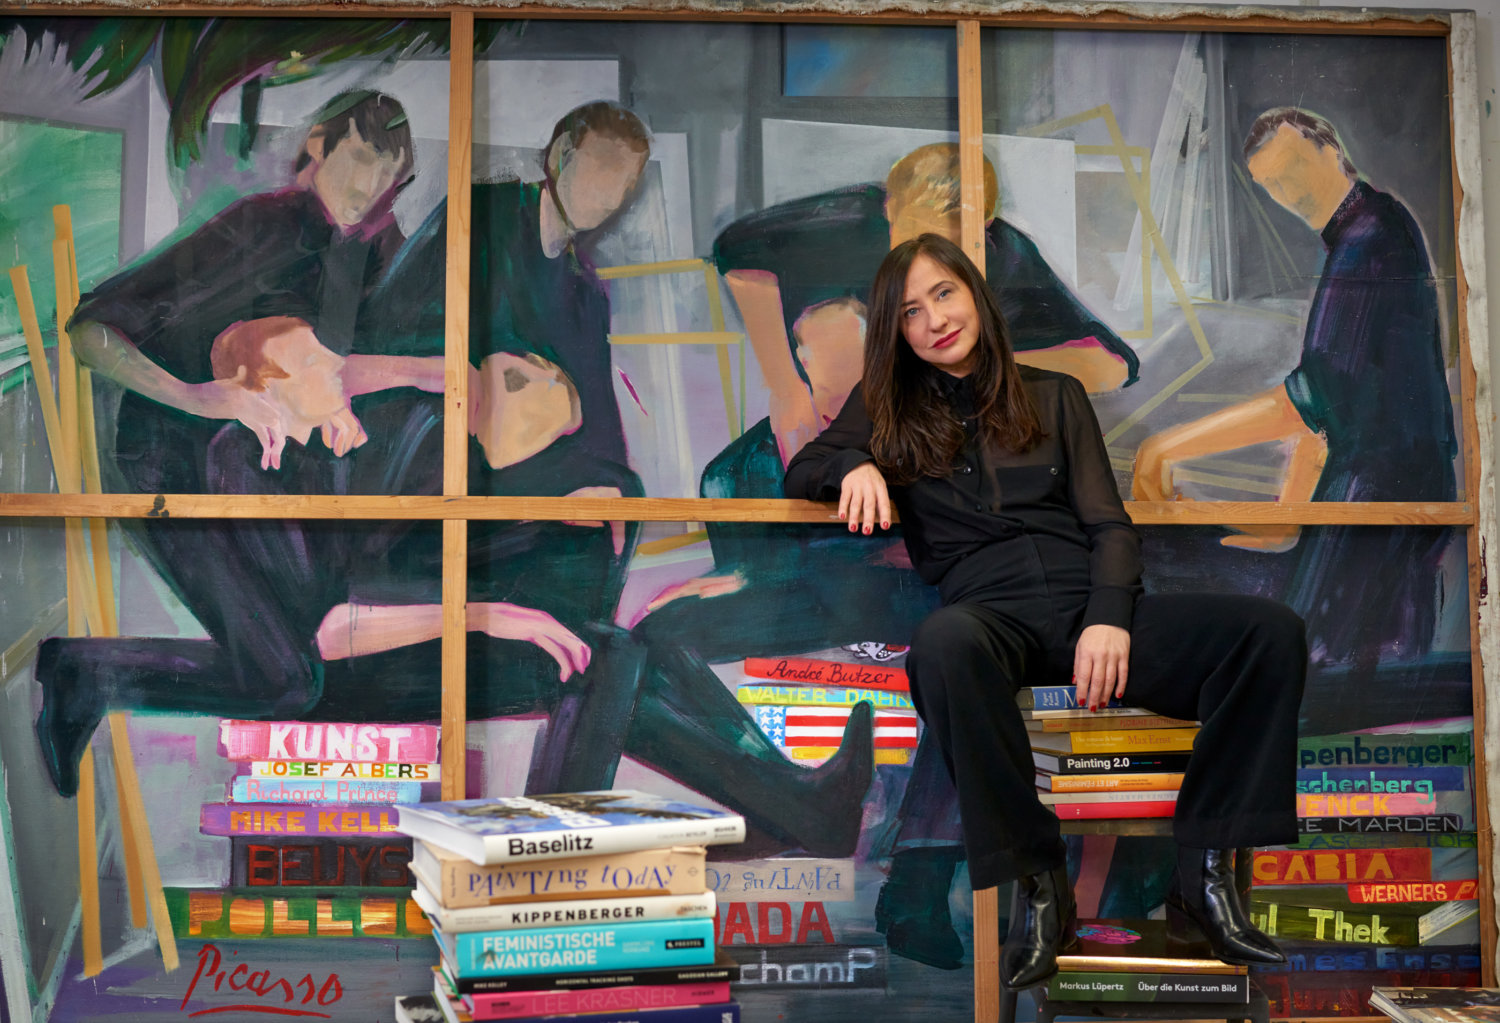 Die Malerin Egle Otto in ihrem Studio auf Kunstkatalogen sitzend